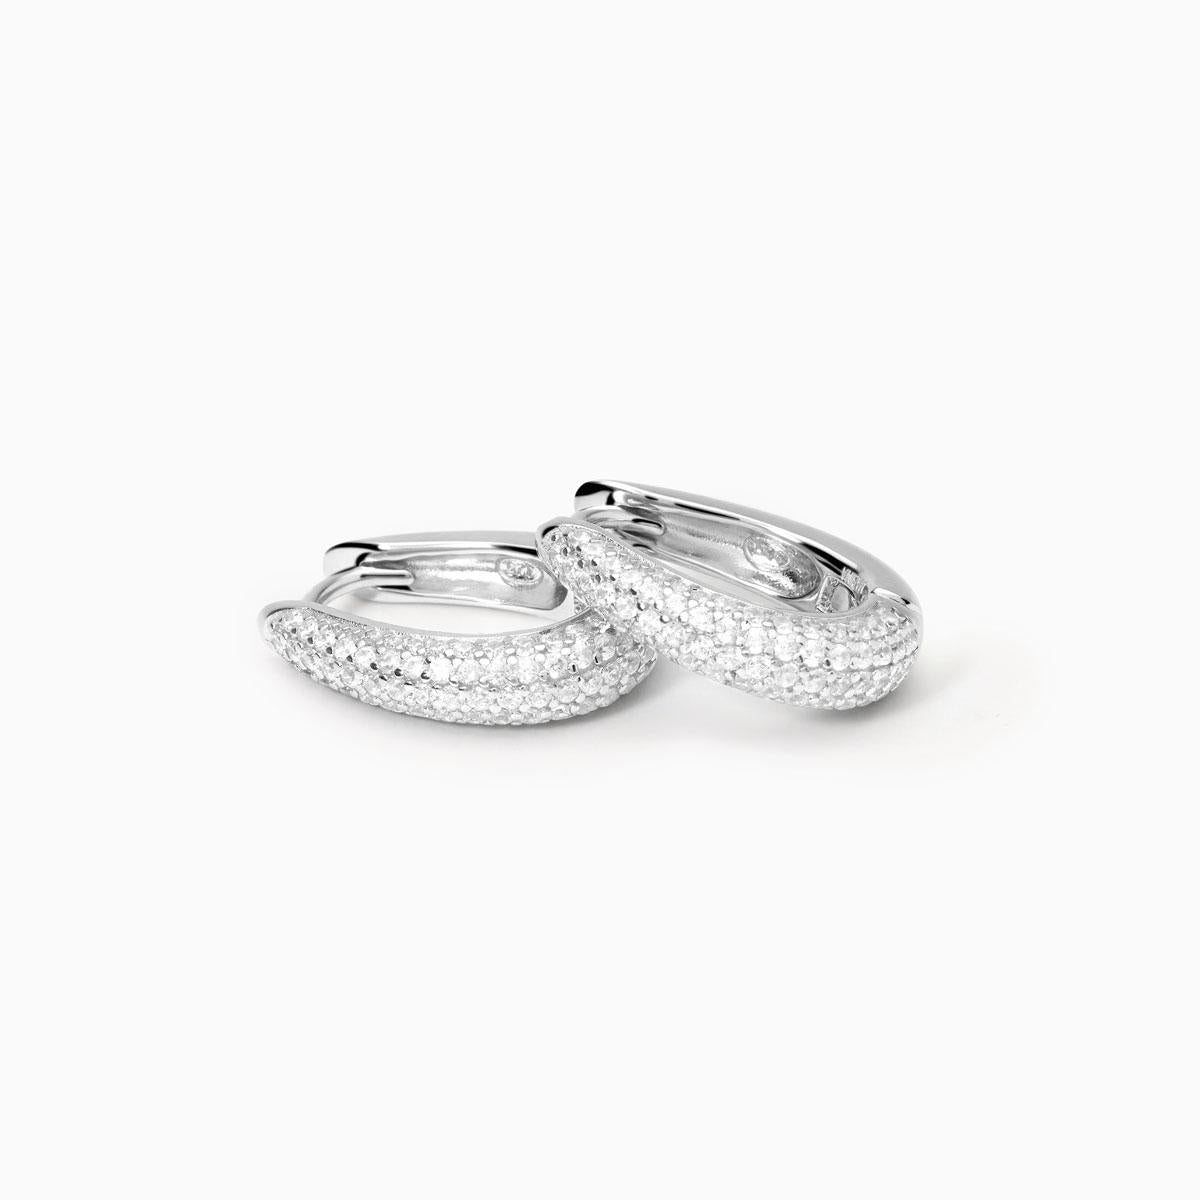 MABINA - Orecchini in argento con zirconi